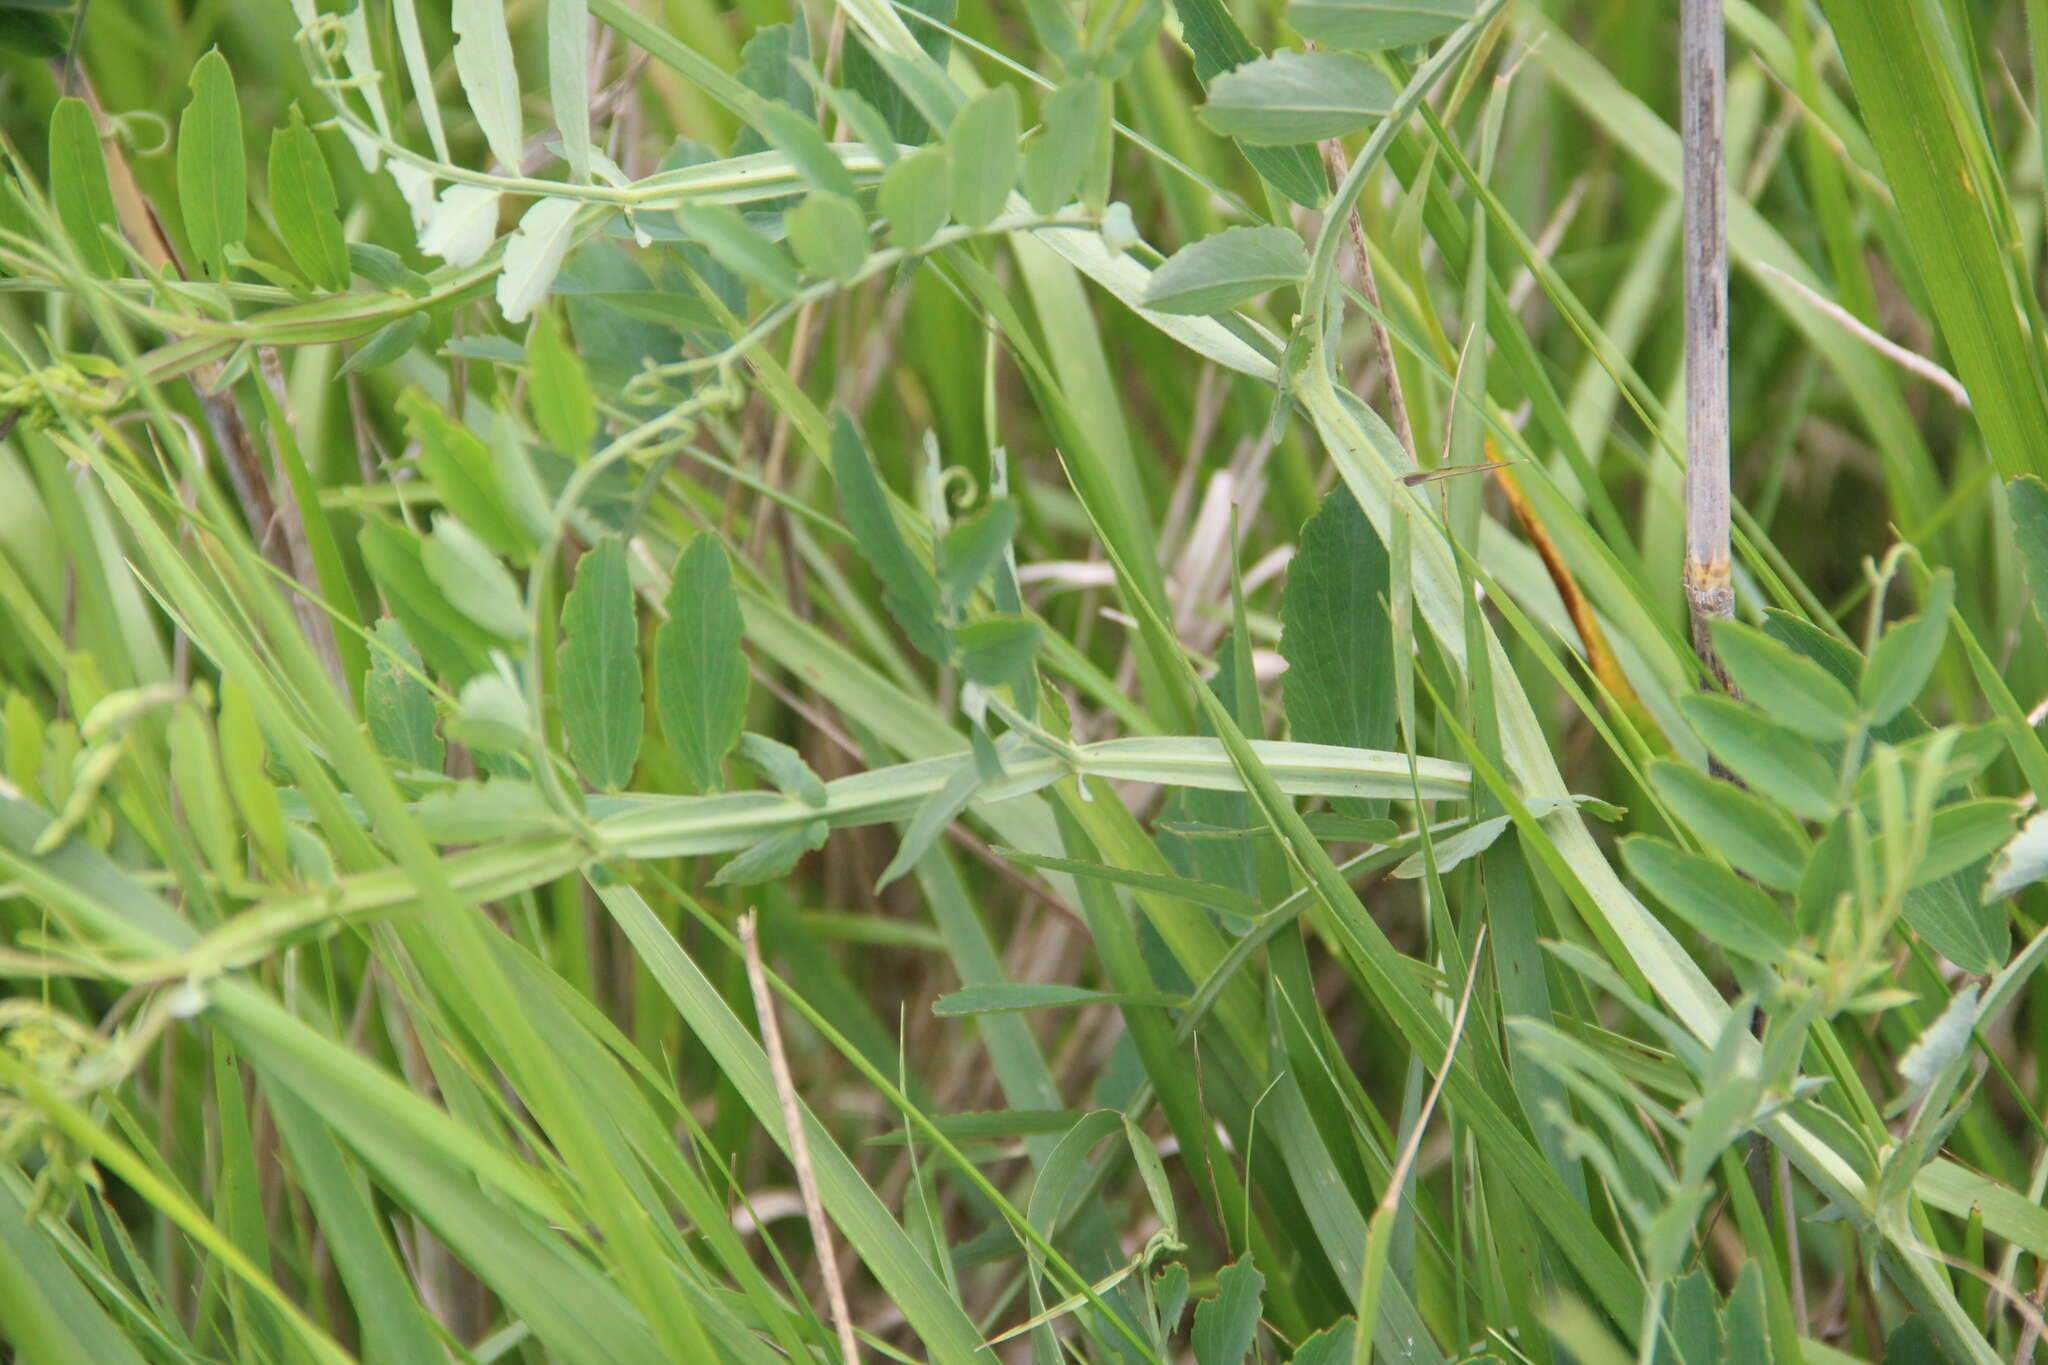 Lathyrus incurvus (Roth) Willd. resmi